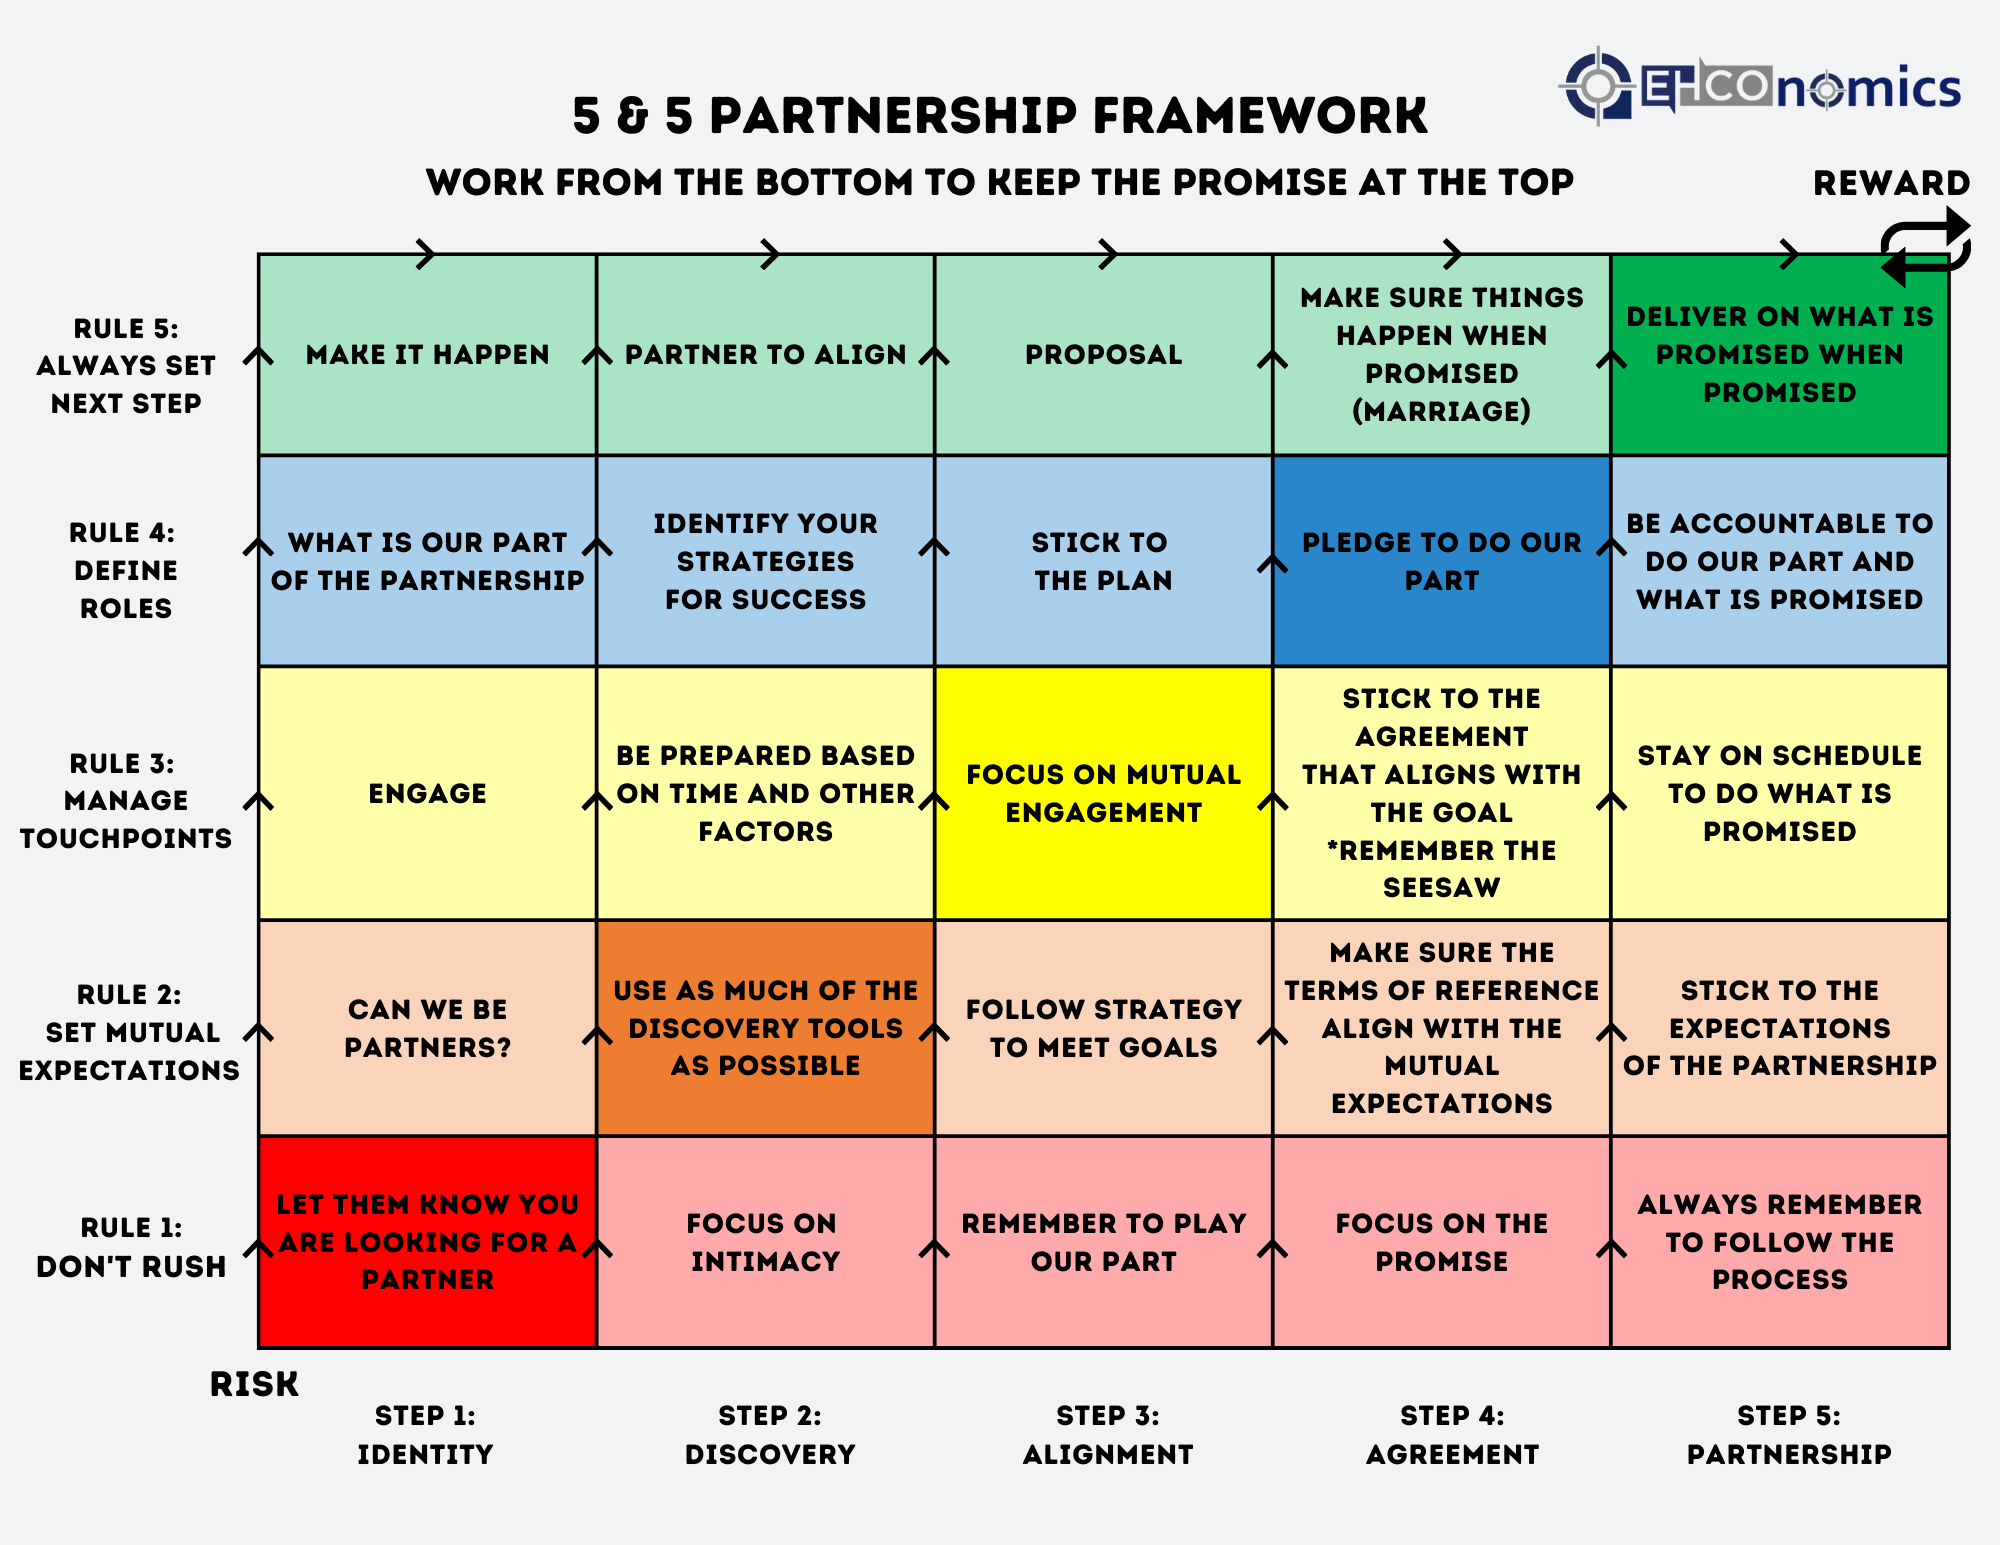 5&5 Partnership Framework Chart